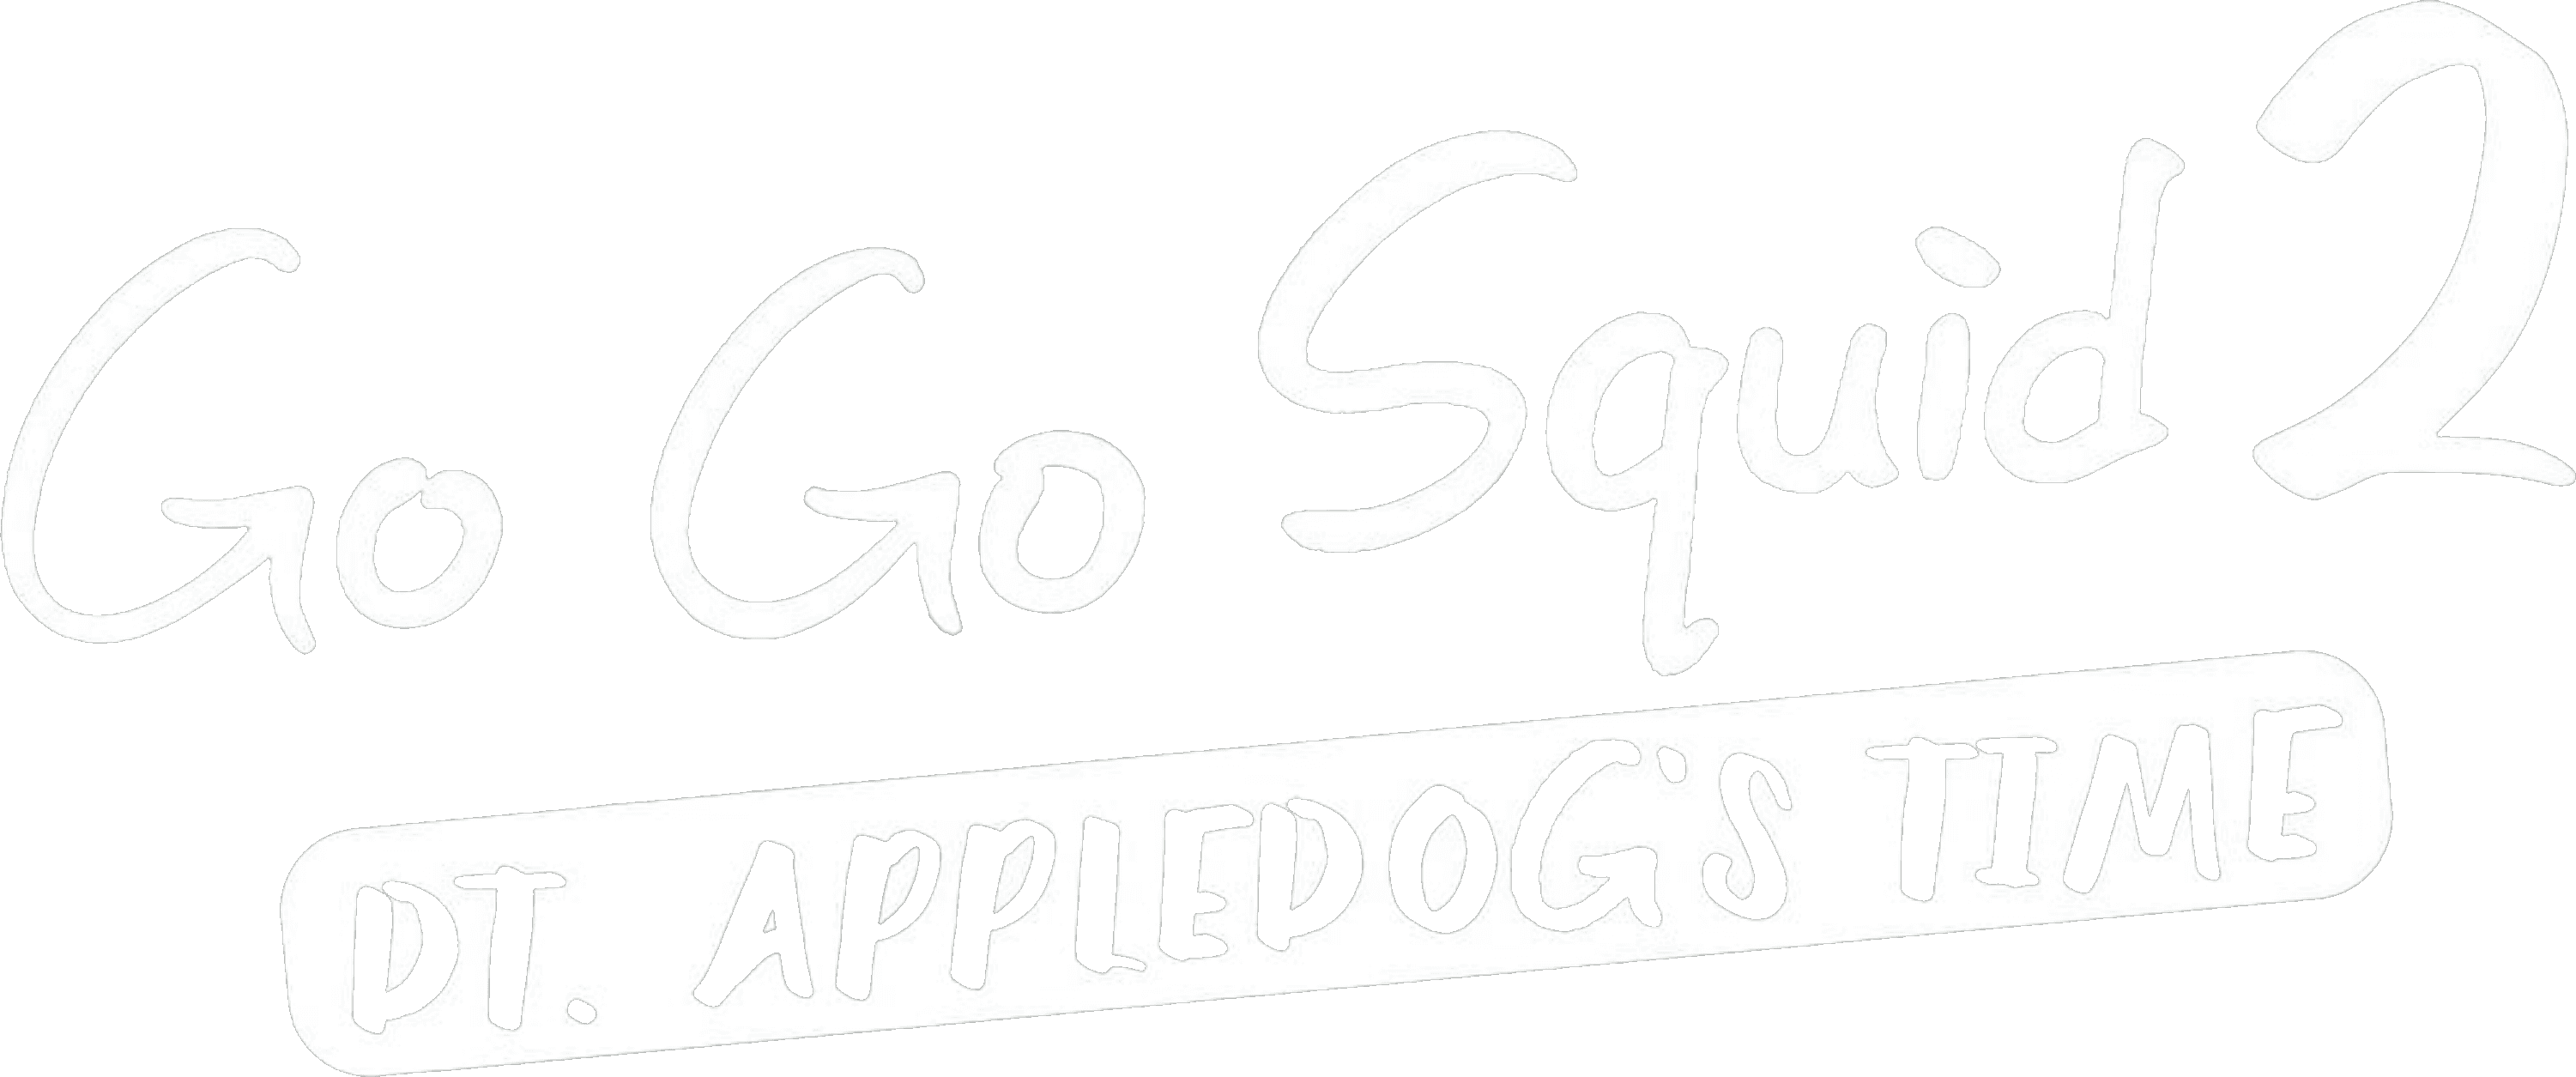 Go Go Squid 2: Dt.Appledog's Time logo